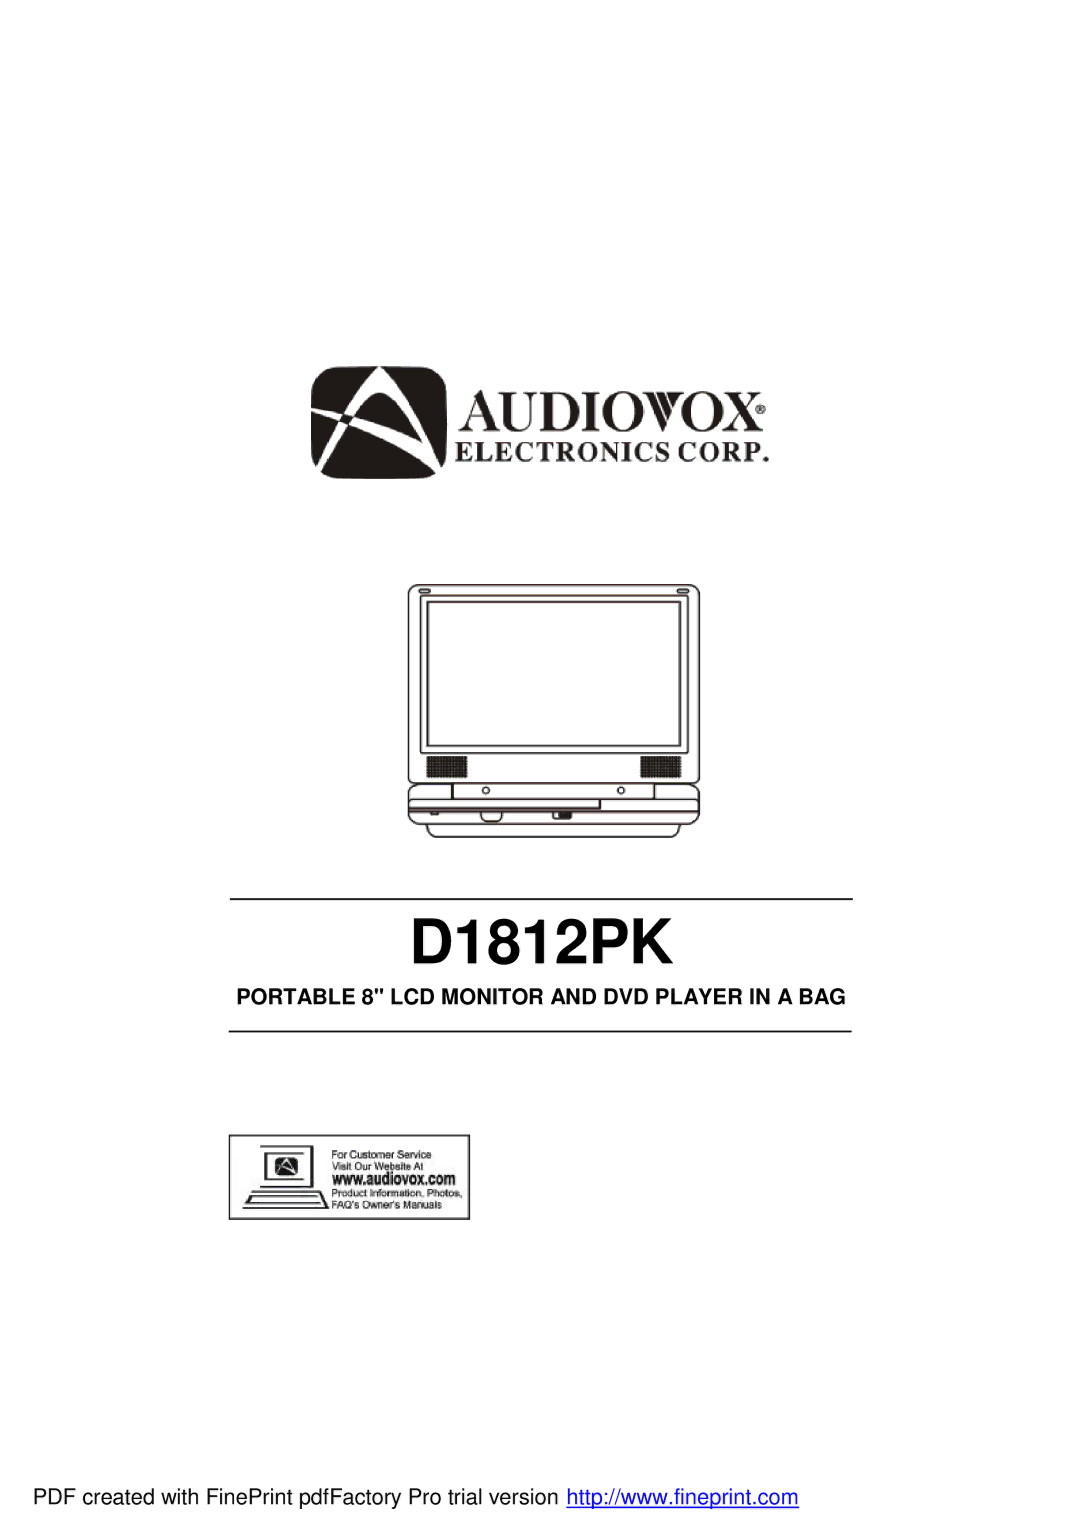 Audiovox D1812PK manual 